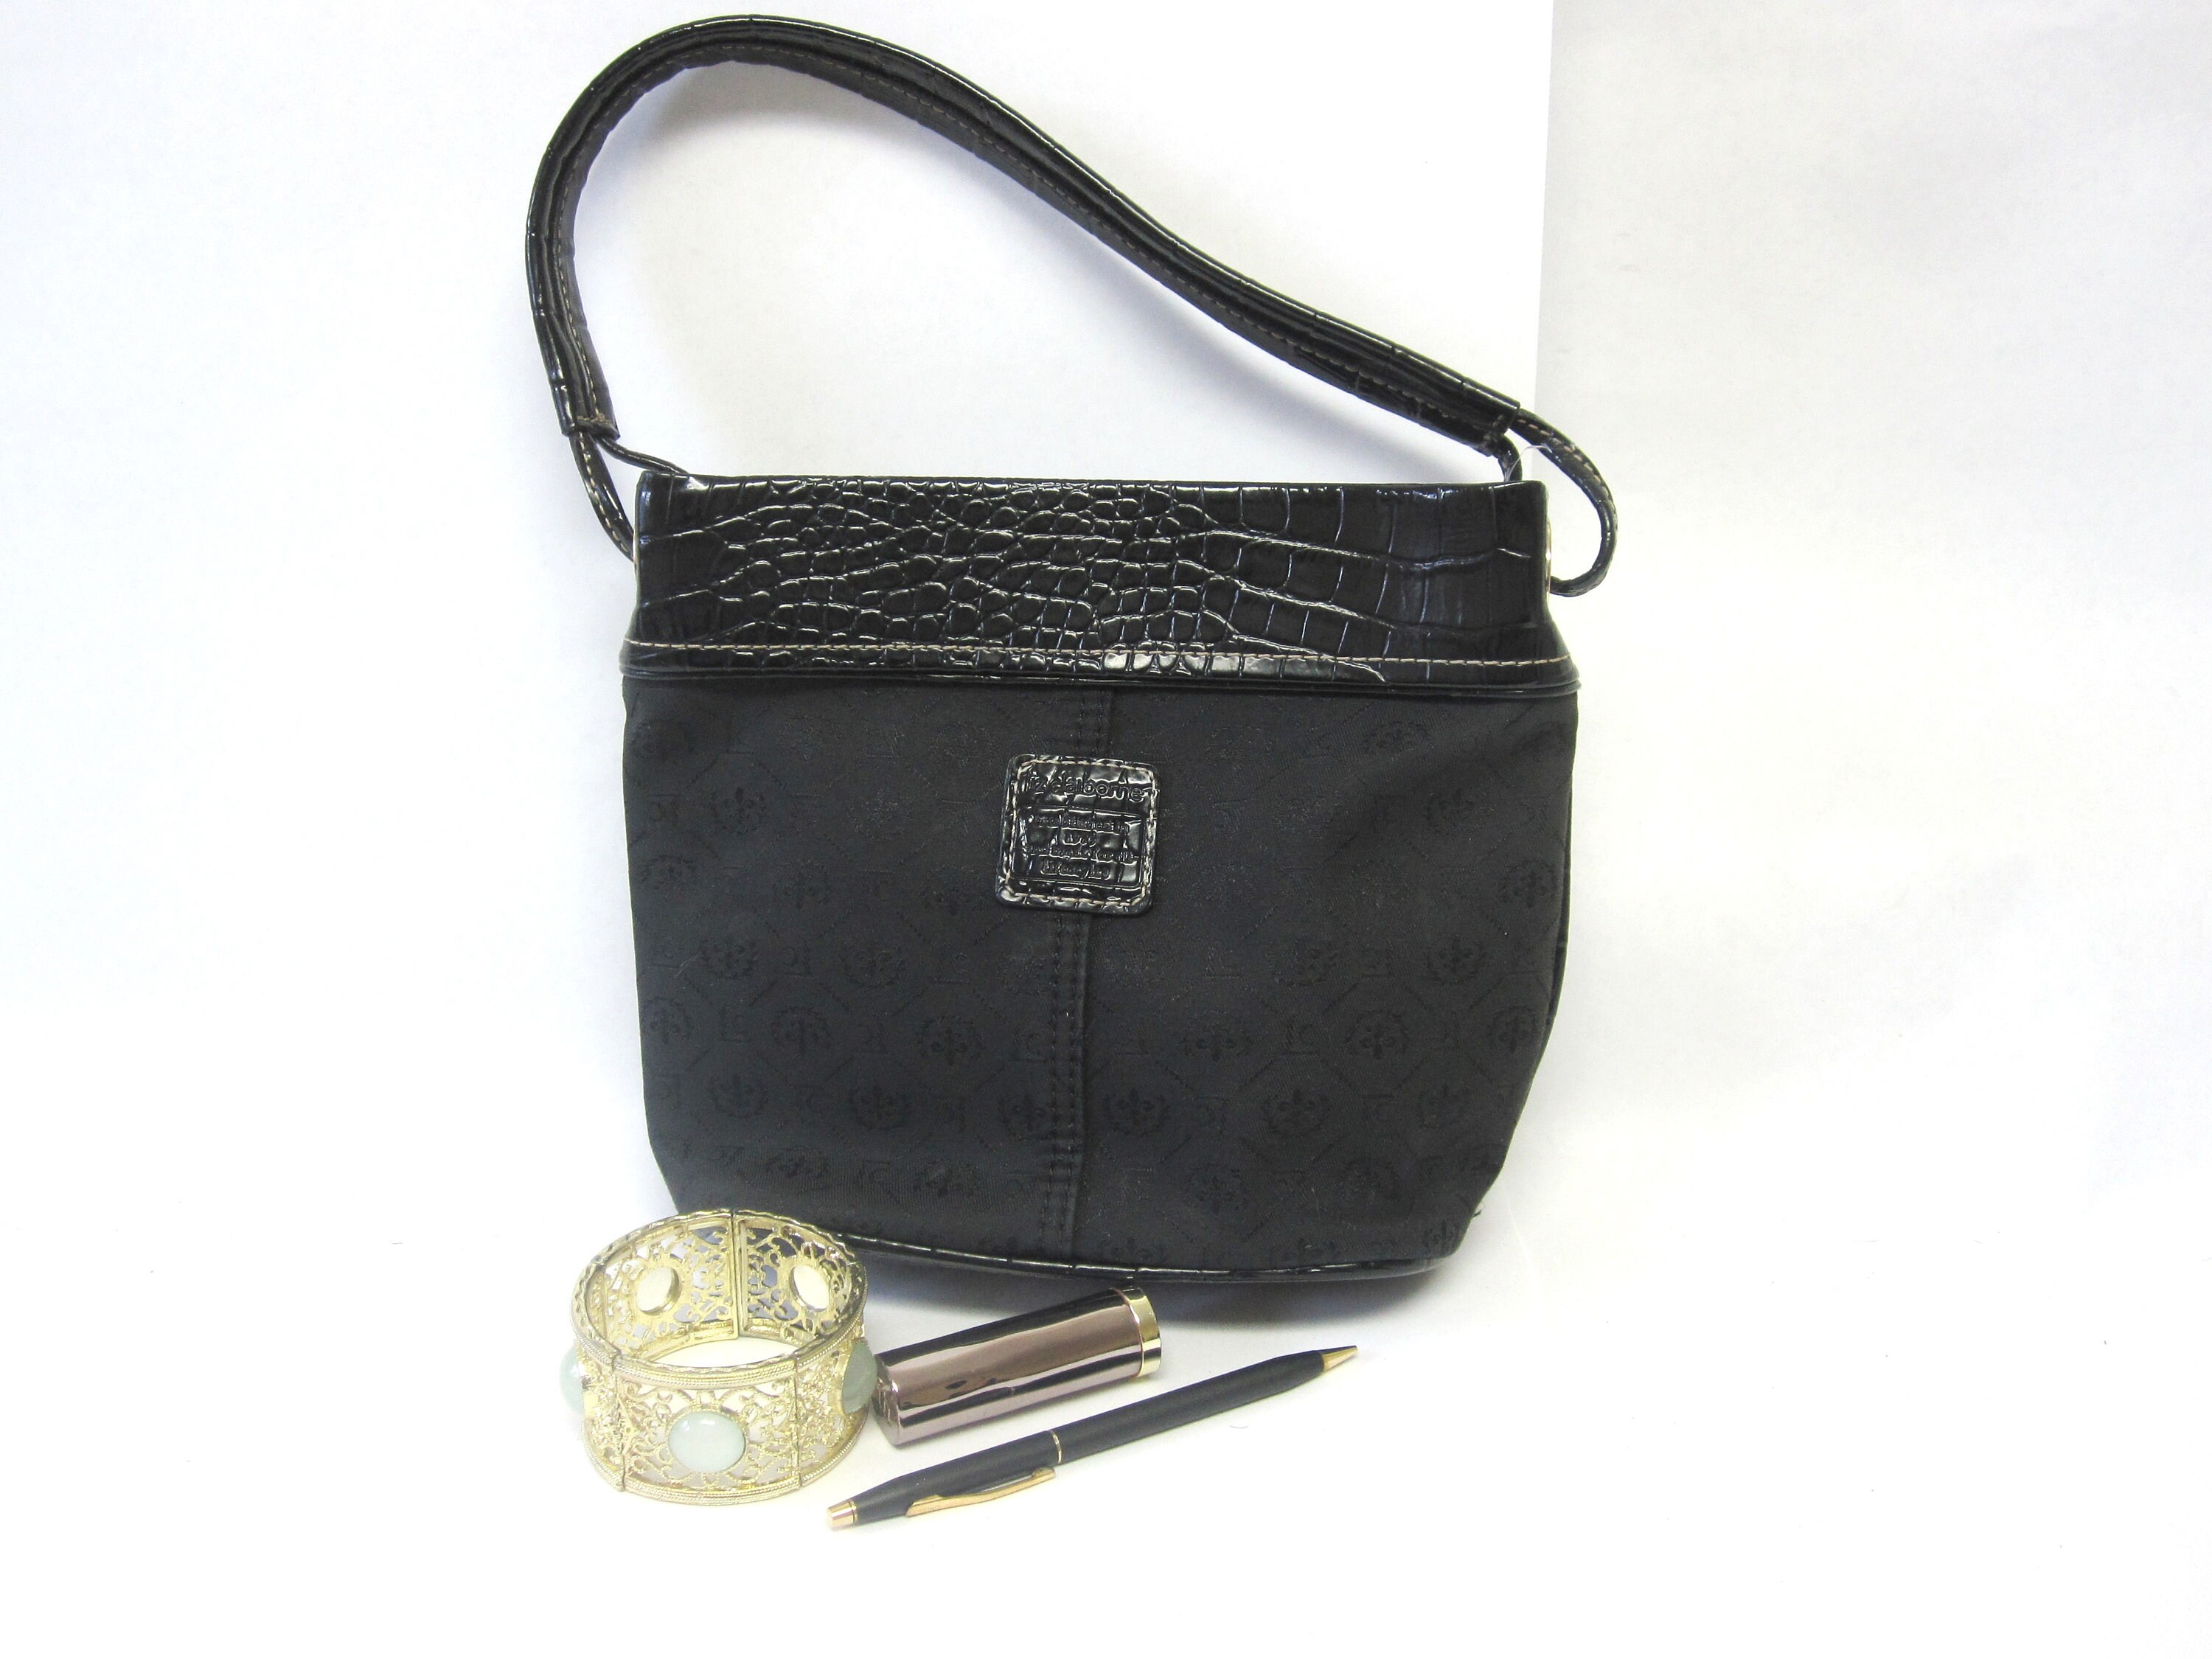 Authentic Vintage Liz Claiborne Purse Hand Bag Black